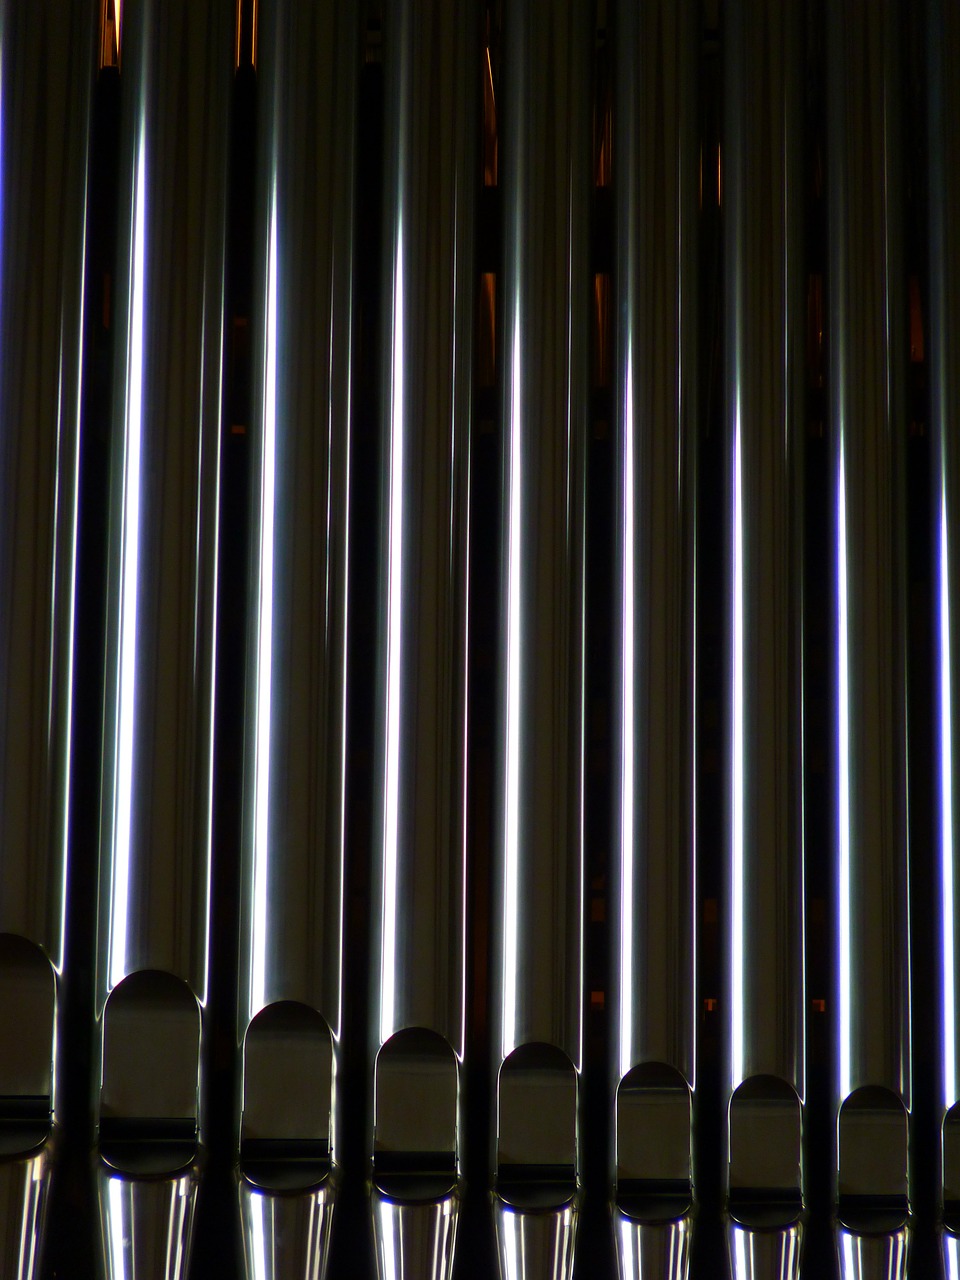 organ whistle organ church free photo